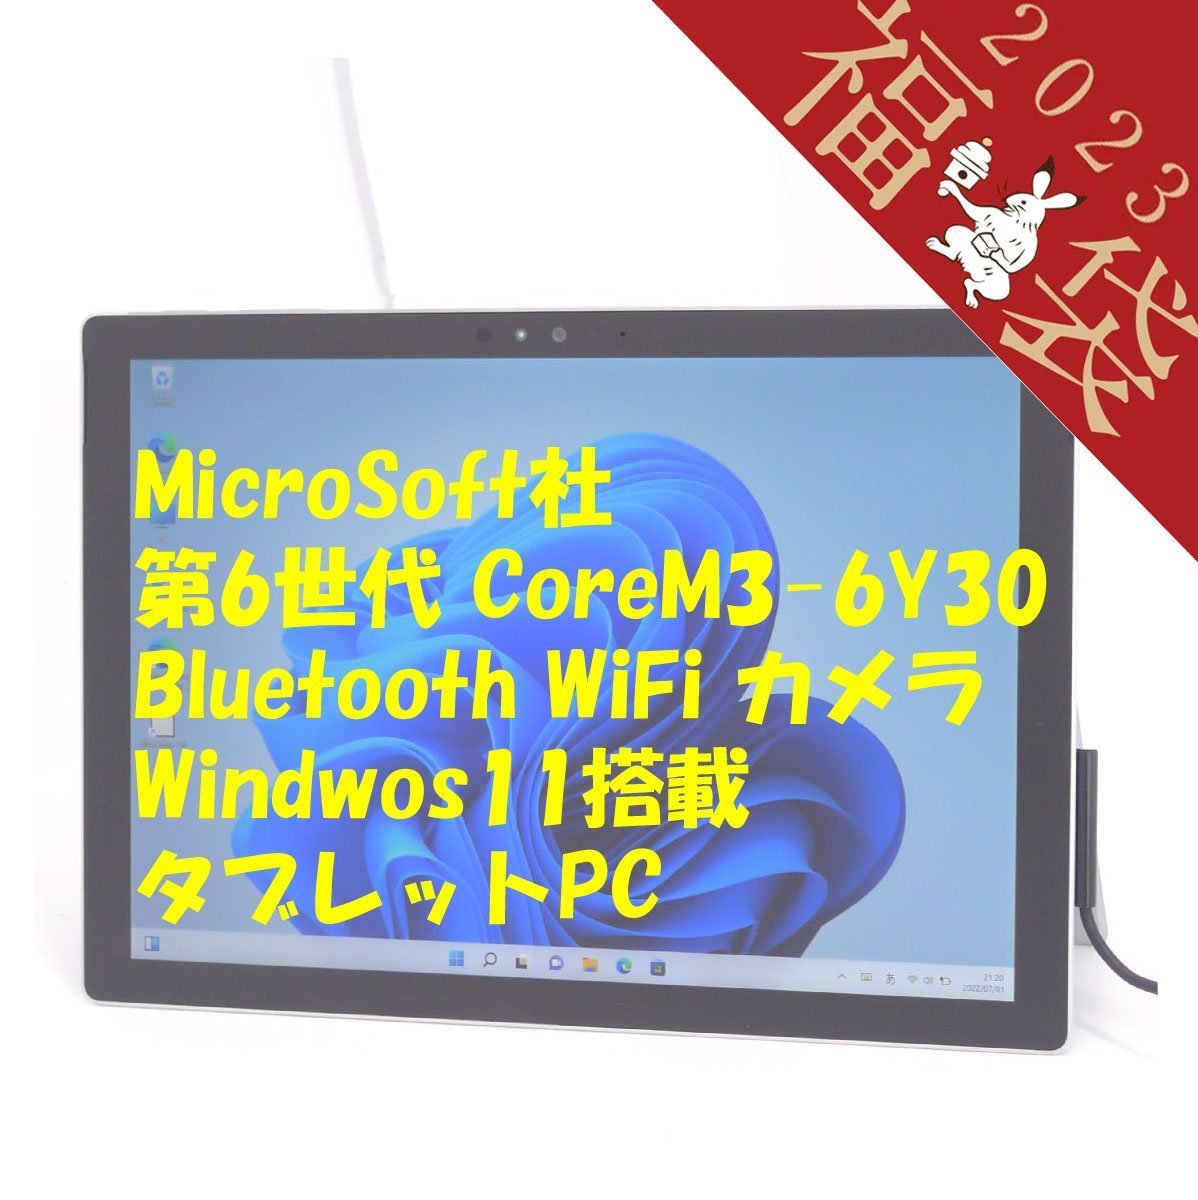 福袋 20%OFF Microsoft タブレット Surface Pro 4 中古良品 第6世代 CoreM 4GB 高速SSD 無線 Wi-Fi Bluetooth Webカメラ Windows11 Office